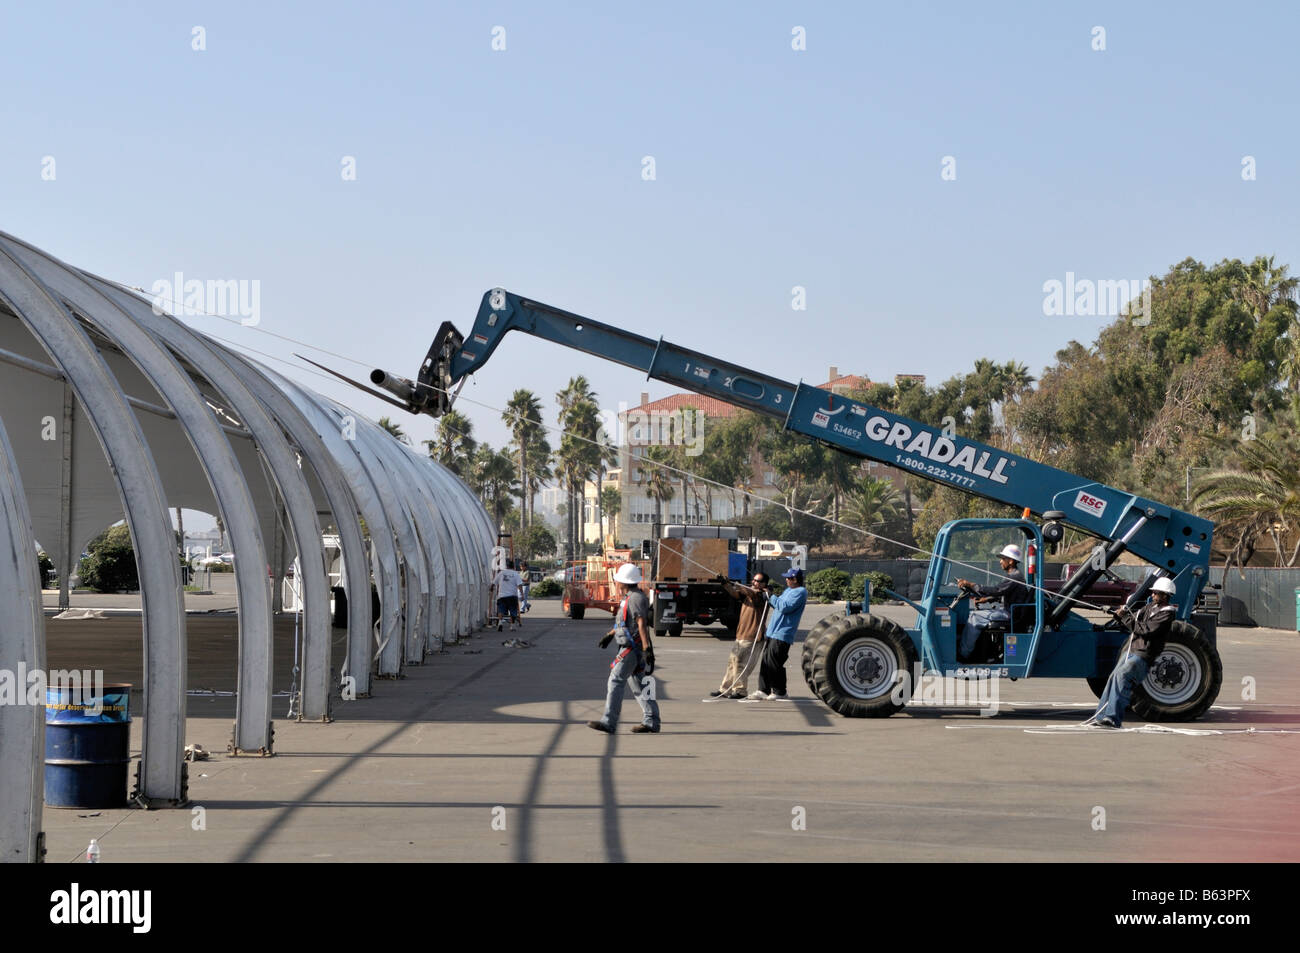 Una gran estructura de tienda se eleva en un estacionamiento en la playa de Santa Monica Foto de stock